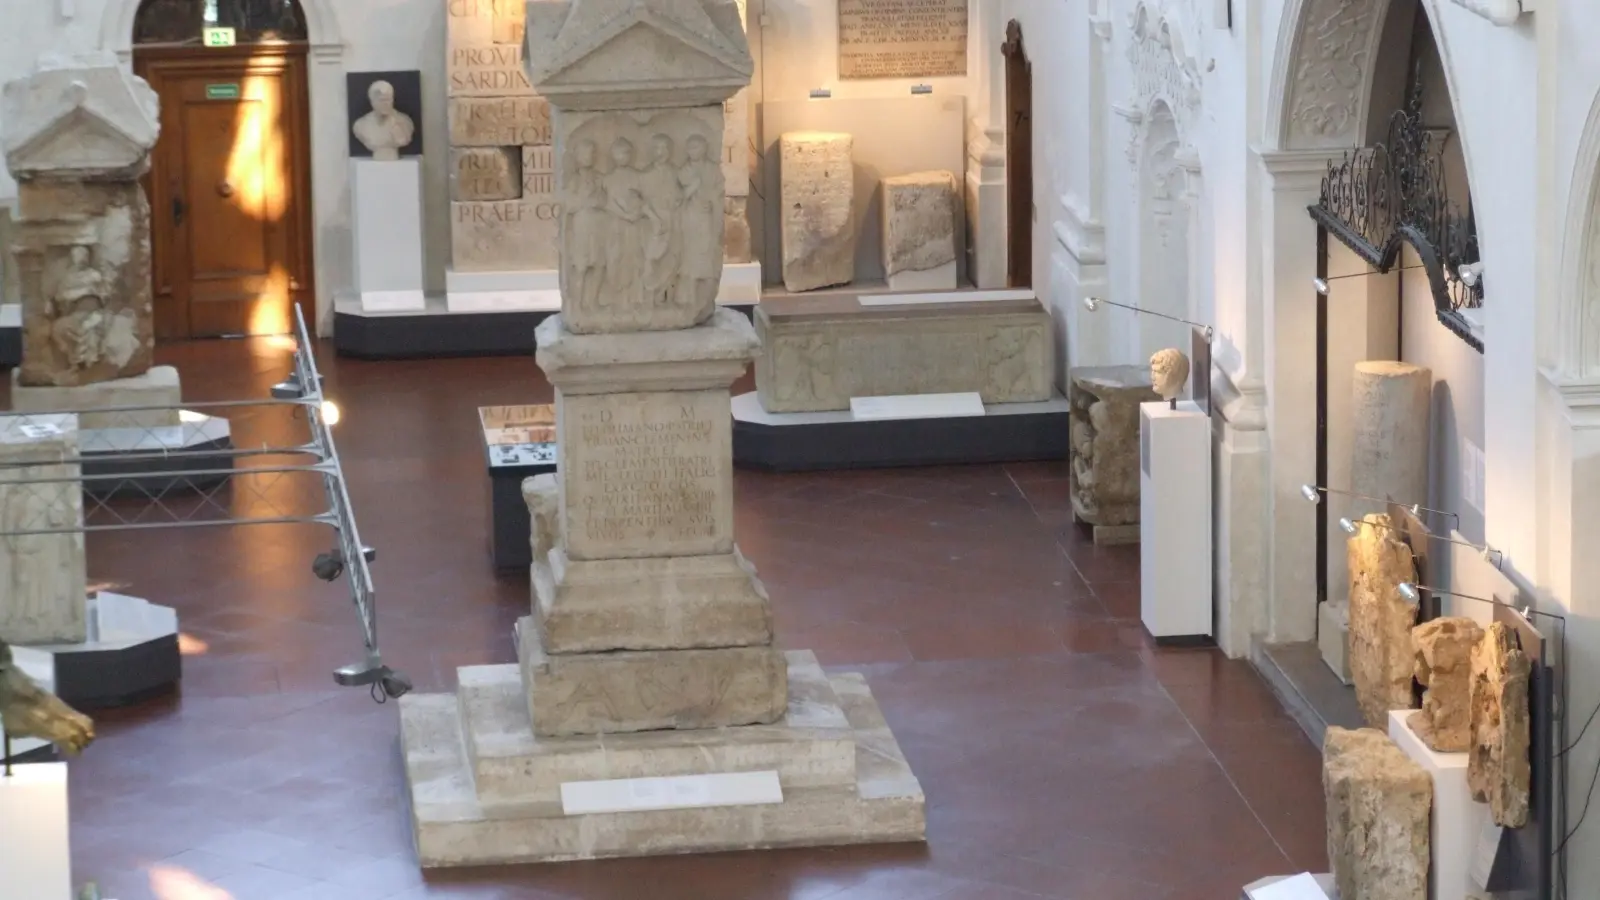 Für die umfangreiche Sammlung des Römischen Museums gibt es derzeit keinen geeigneten Ausstellungsraum in Augsburg. Nun könnte eine mögliche Kooperation mit der Archäologischen Staatssammlung in München eine neue Chance eröffnen. (Foto: Christine Ketzer)